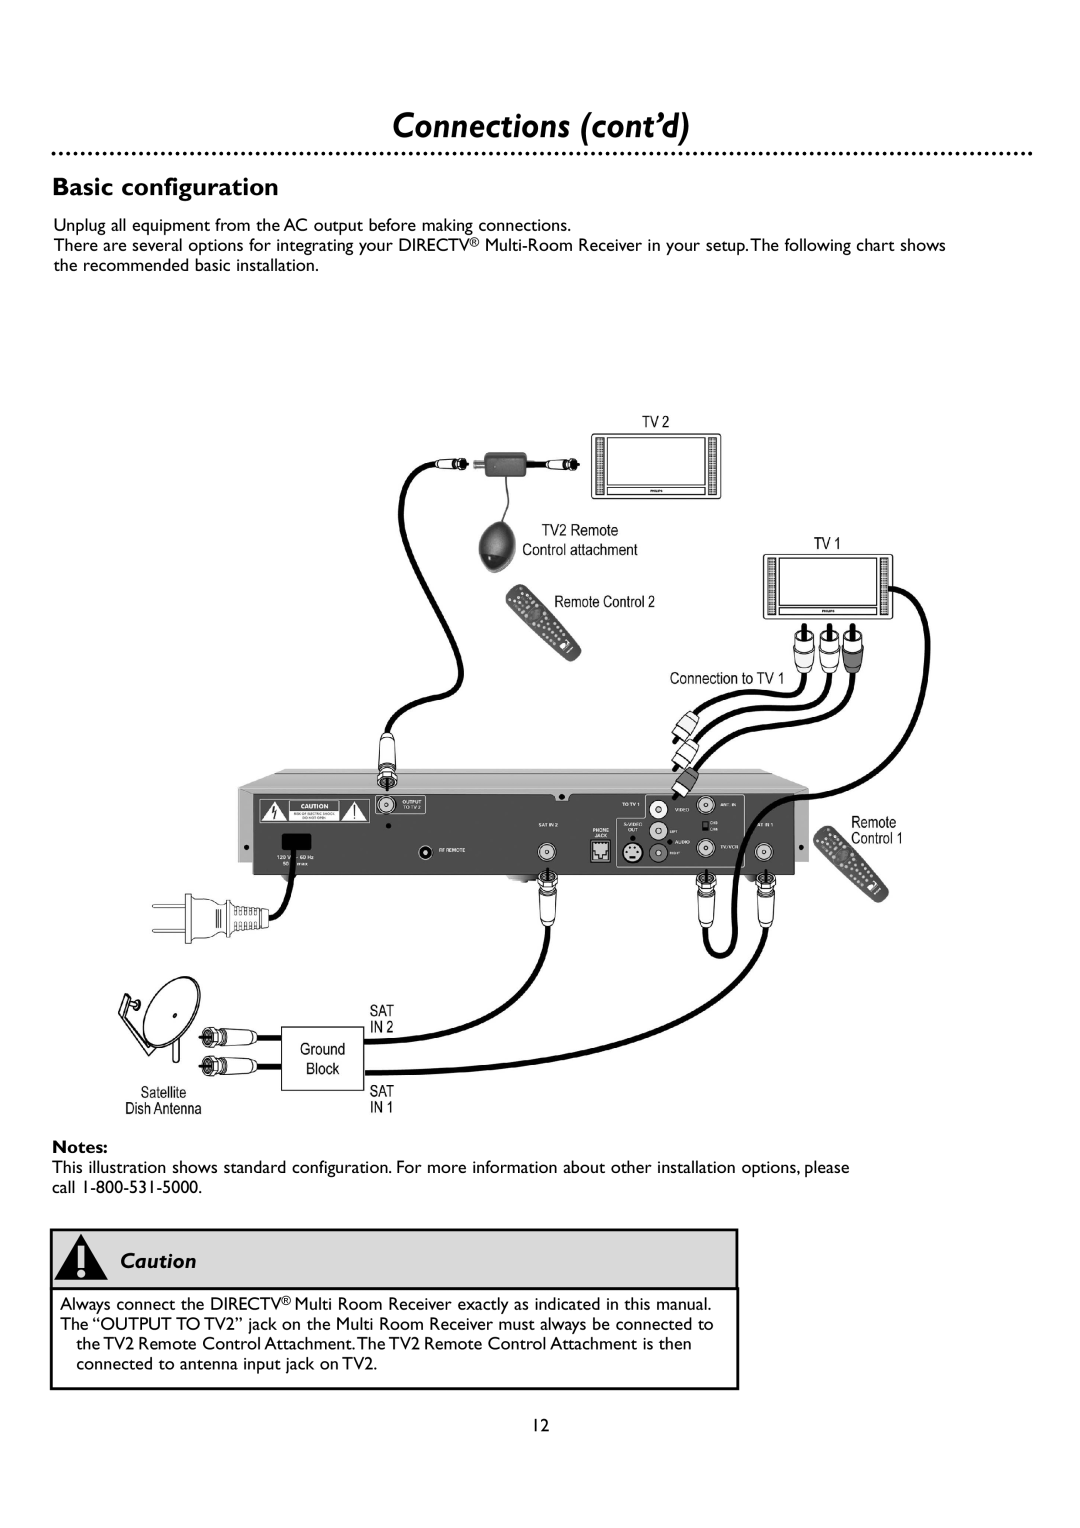 DirecTV DSR 660 manual Basic configuration, Connections cont’d, sCaution 